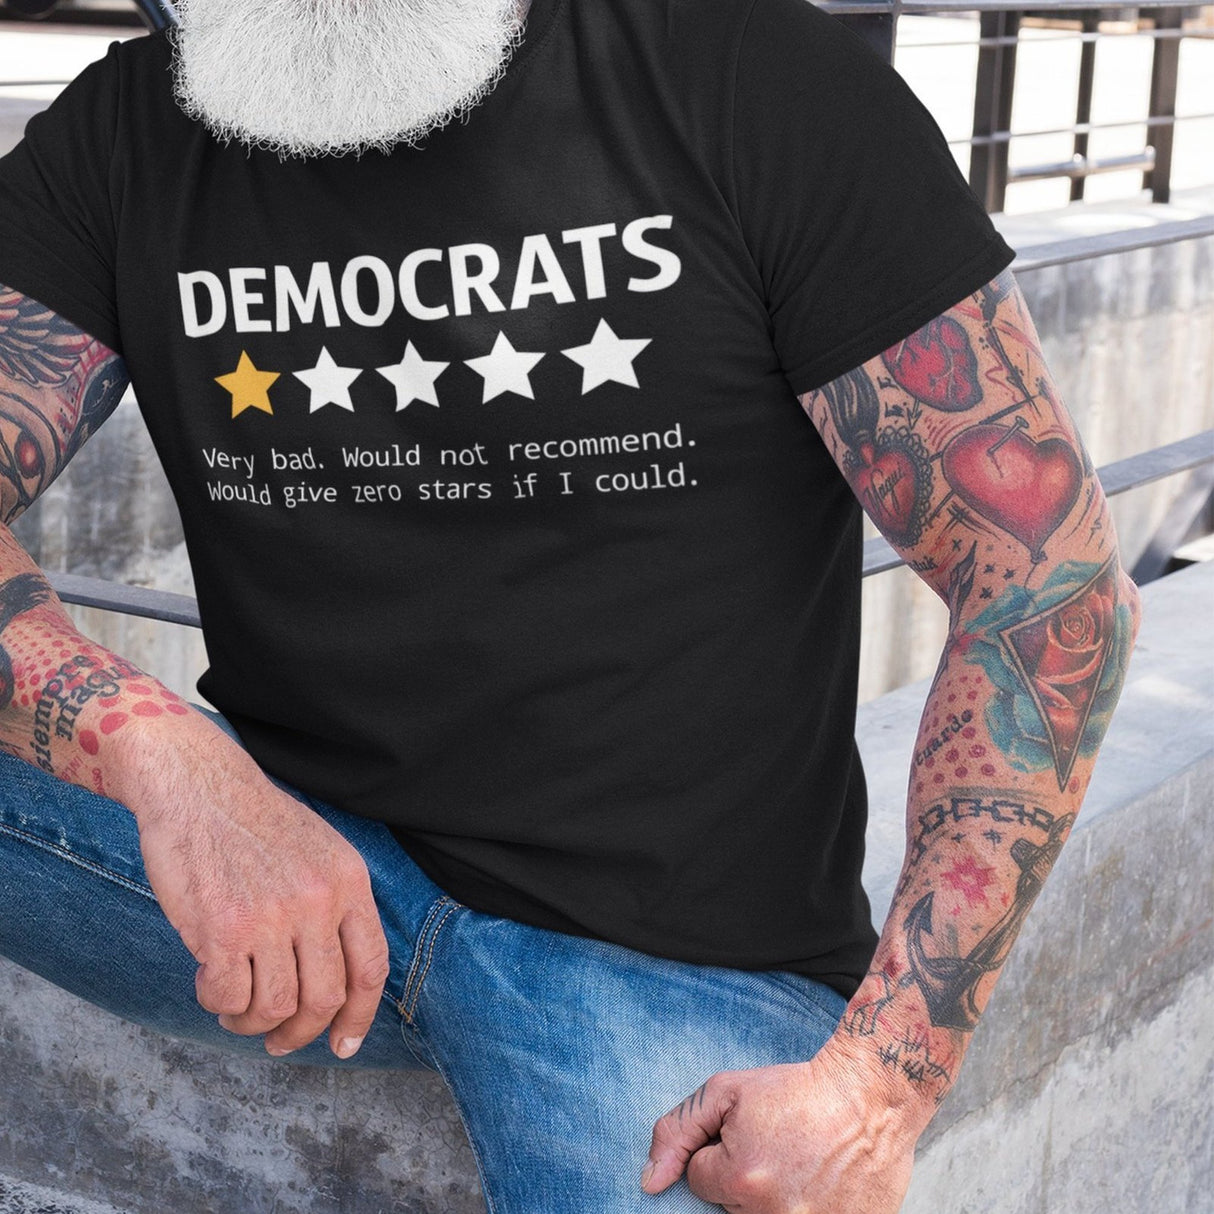 democrats-very-bad-review-republican-tee-democrat-t-shirt-election-tee-politics-t-shirt-usa-tee#color_black